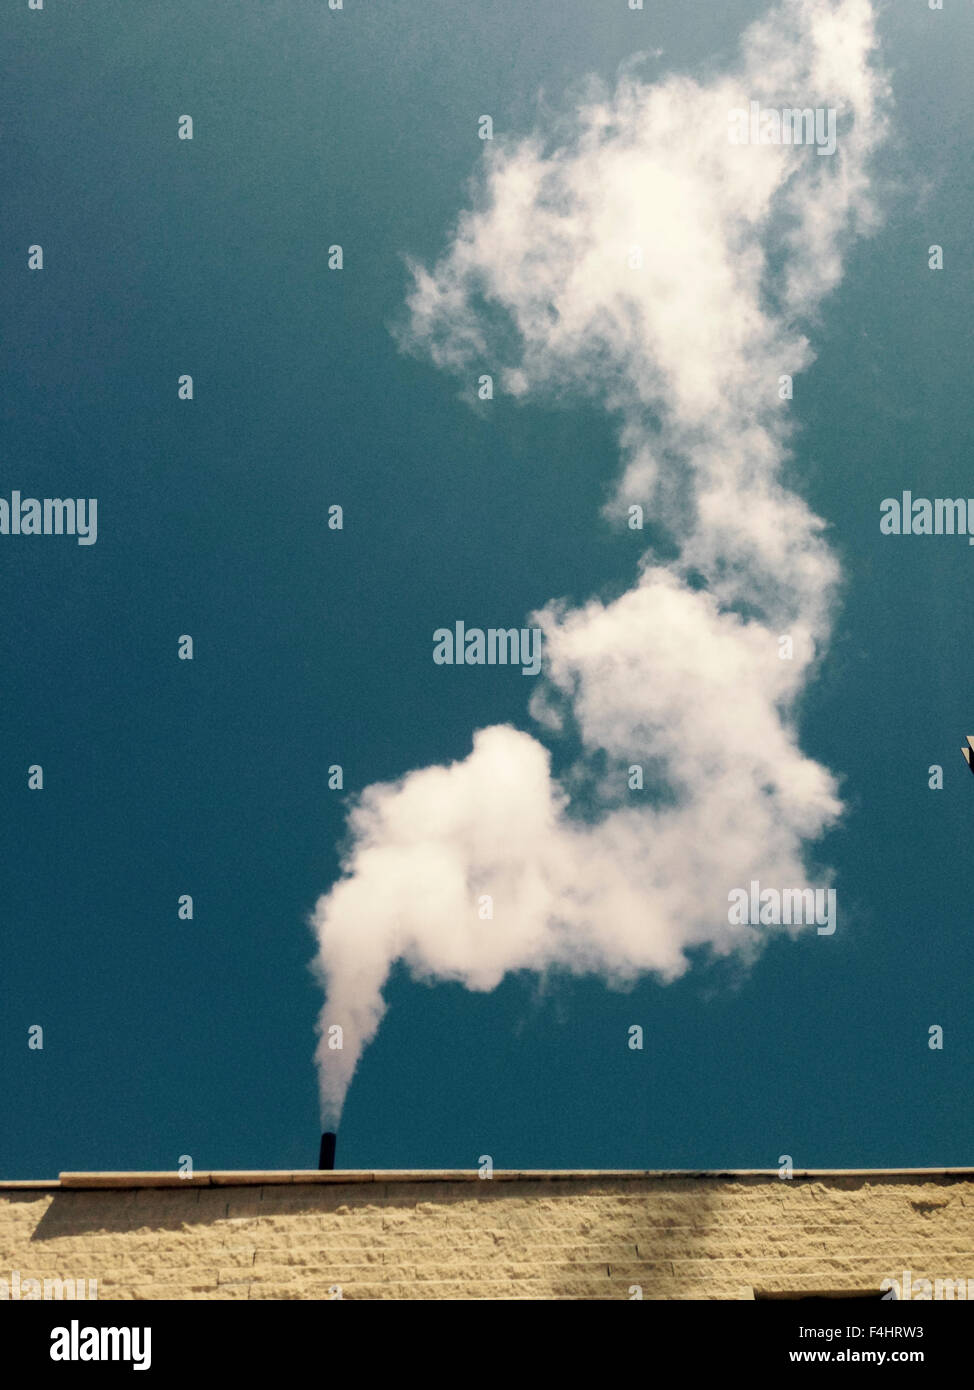 La cheminée de la blanchisserie industrielle nuage de vapeur blanche répandant verticalement vers le haut plus de ciel bleu Banque D'Images